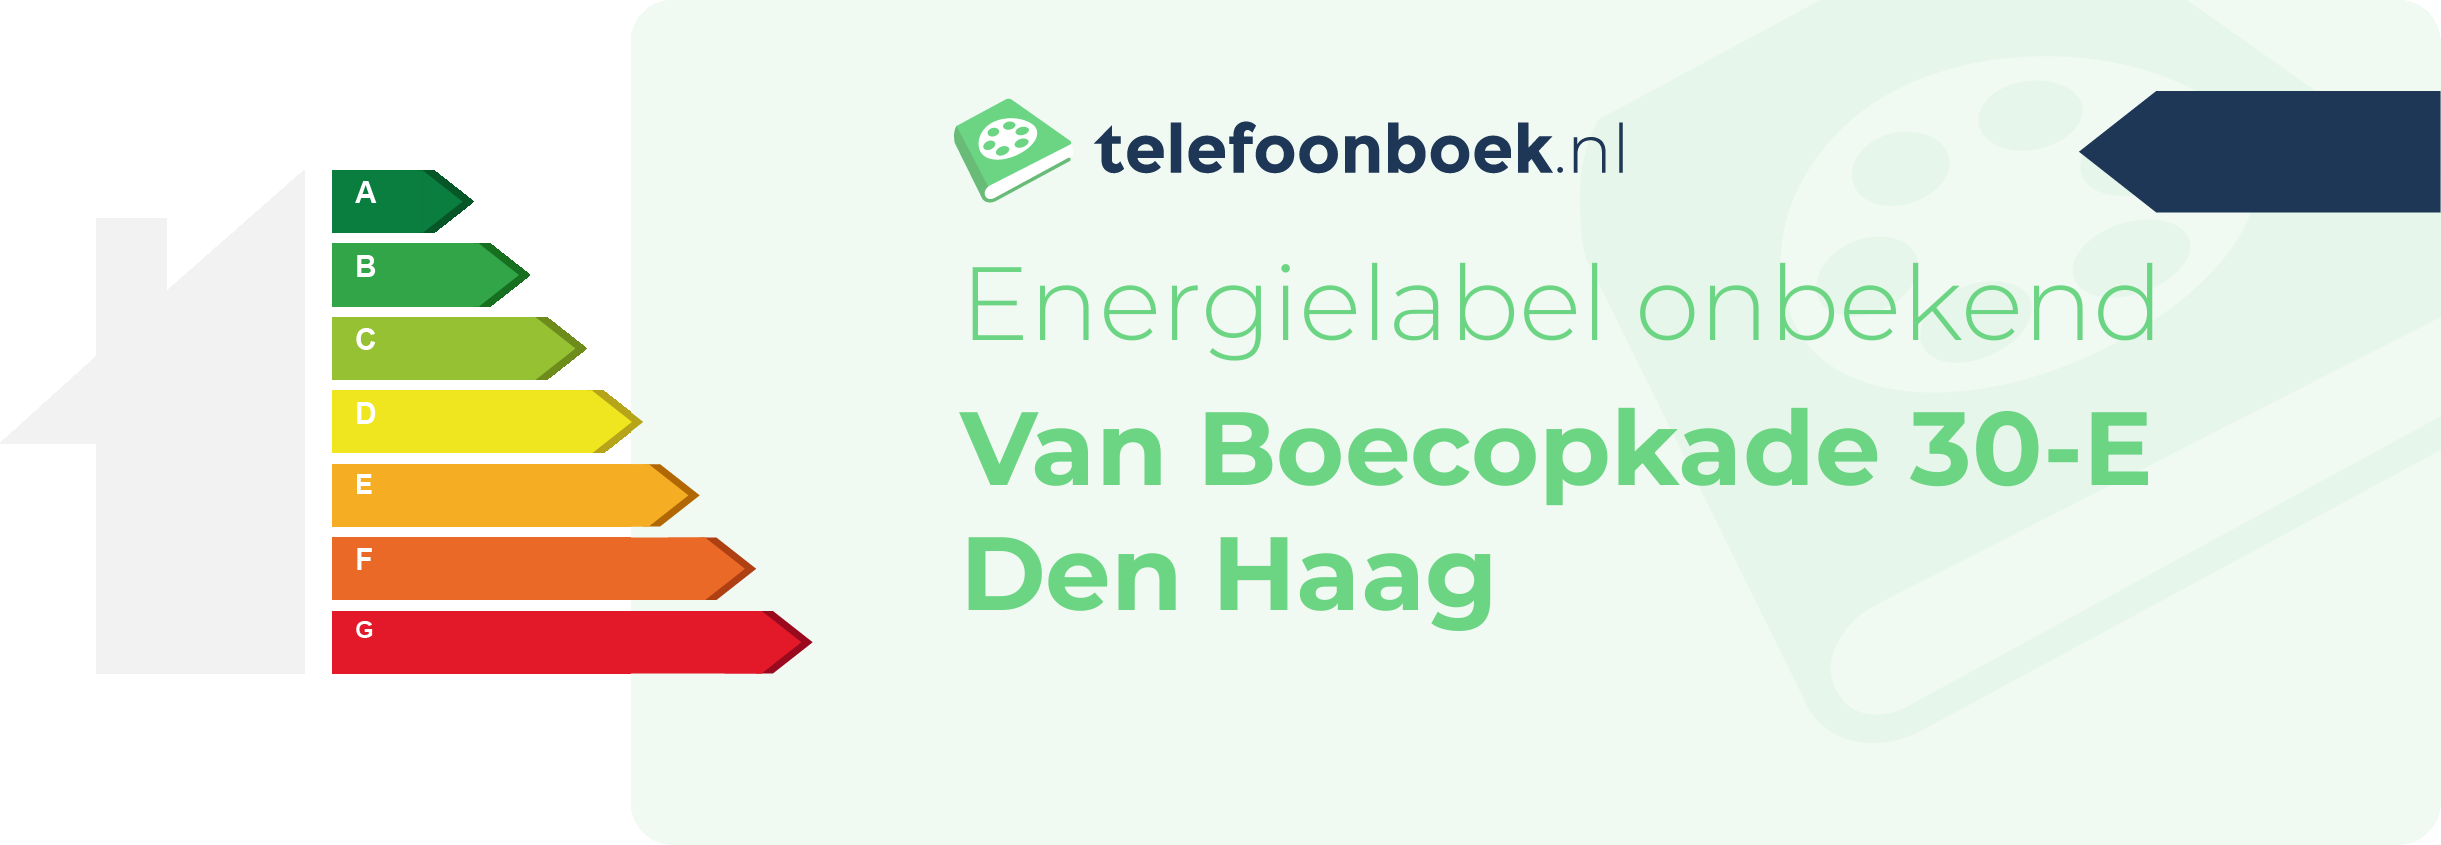 Energielabel Van Boecopkade 30-E Den Haag